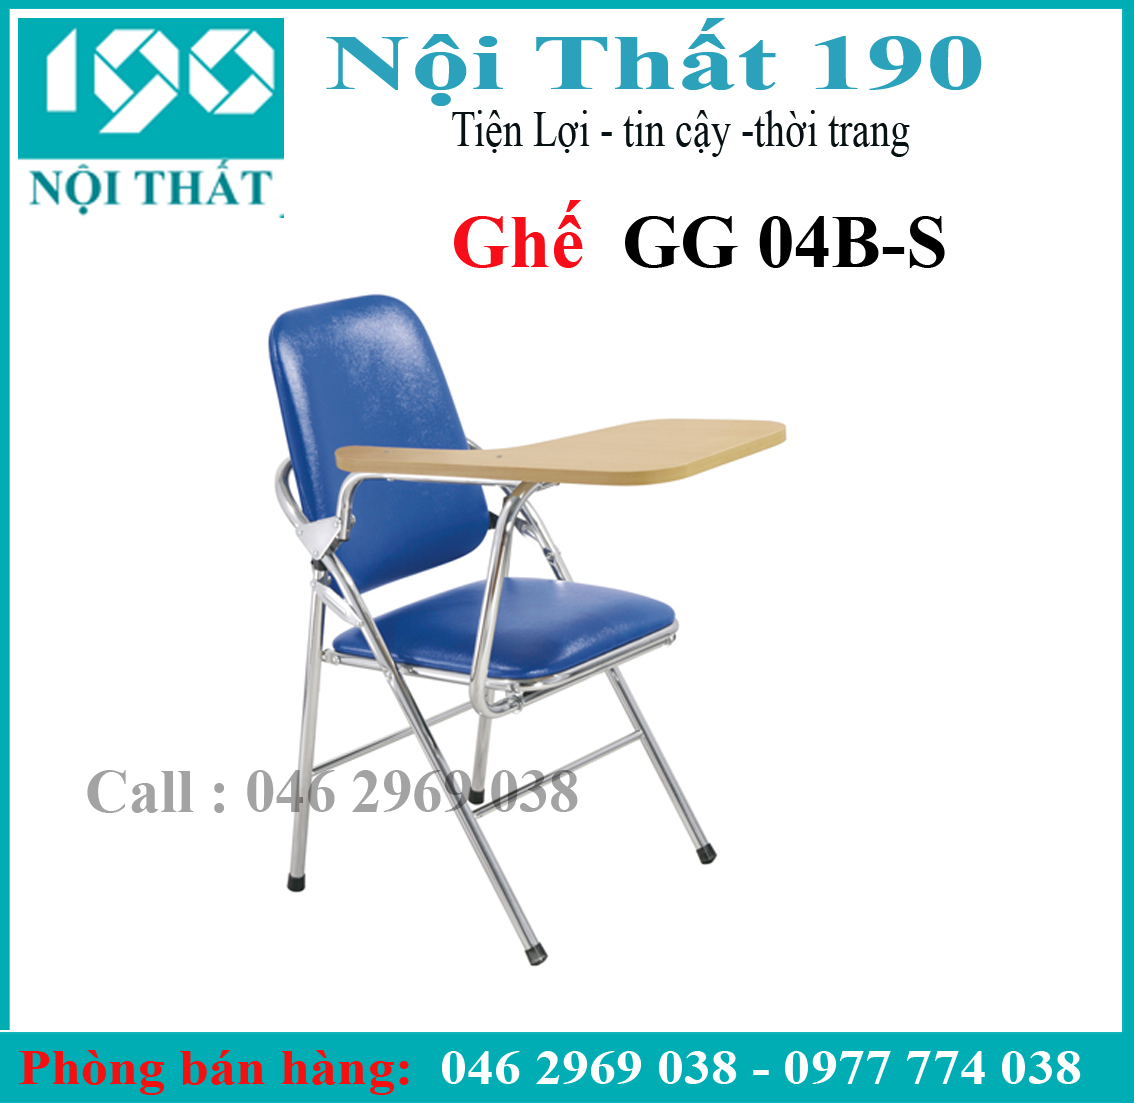 Ghế gấp liền bàn GG04B-S